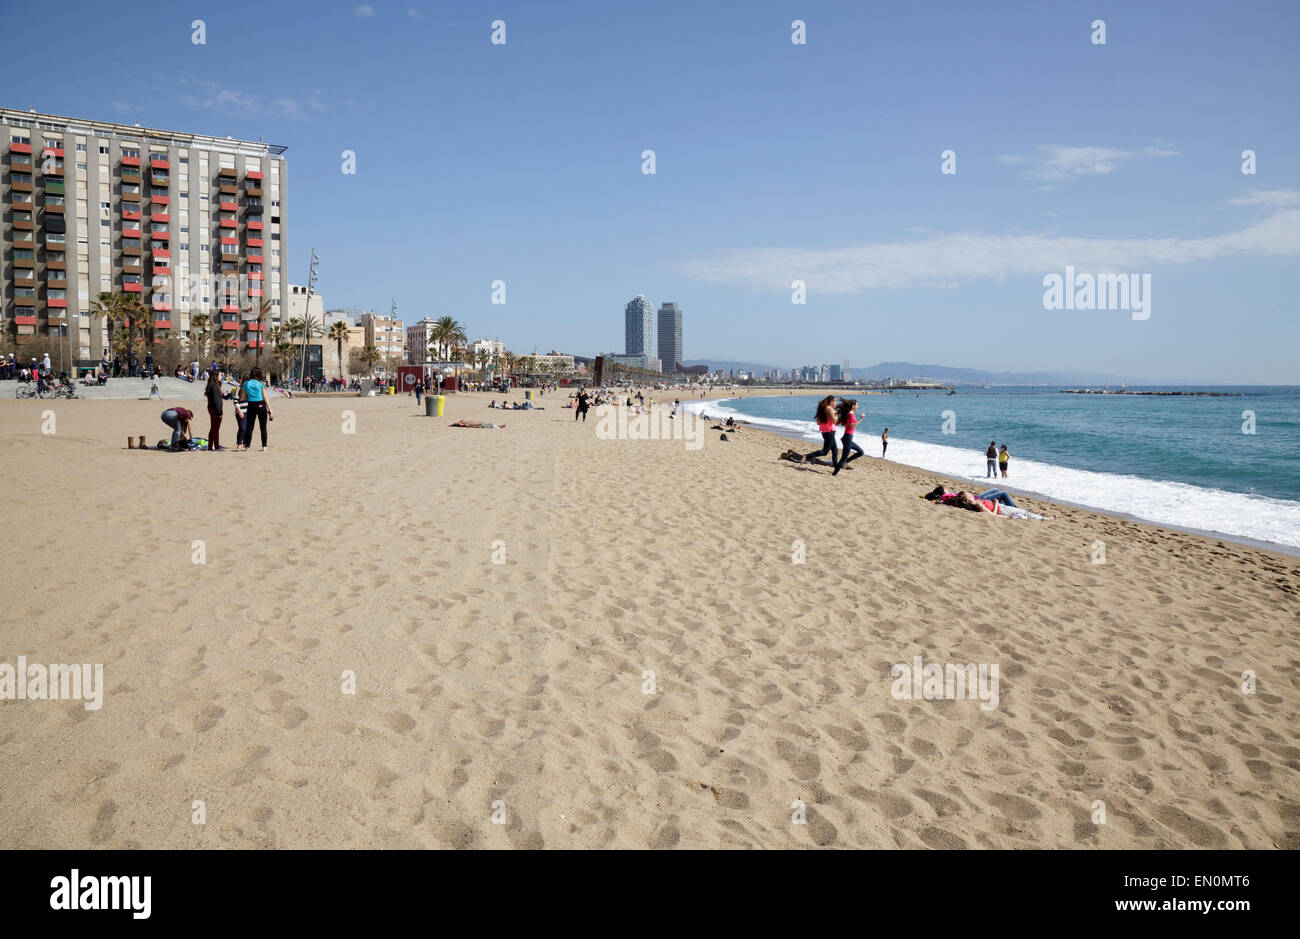 La plage de Barceloneta, Barcelone, Catalogne, Espagne Banque D'Images